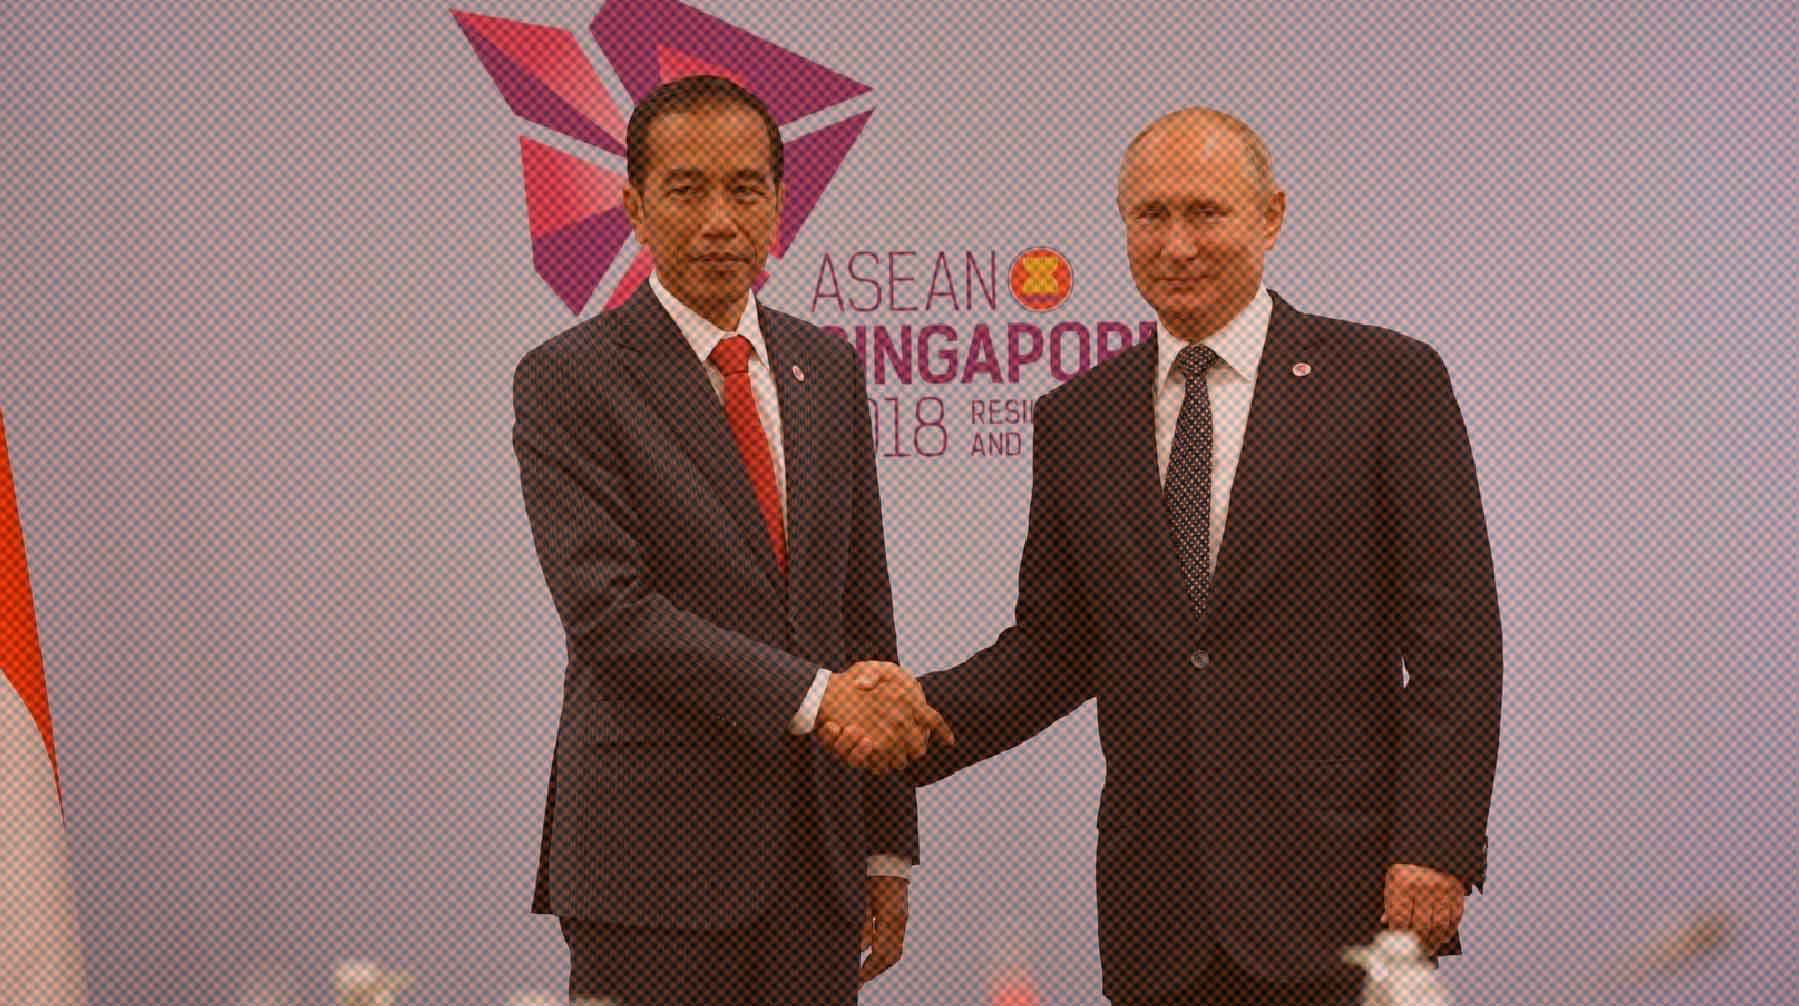 Dailystorm - Президент Индонезии Видодо сообщил, что Путин и Си Цзиньпин лично приедут на саммит G20 на Бали